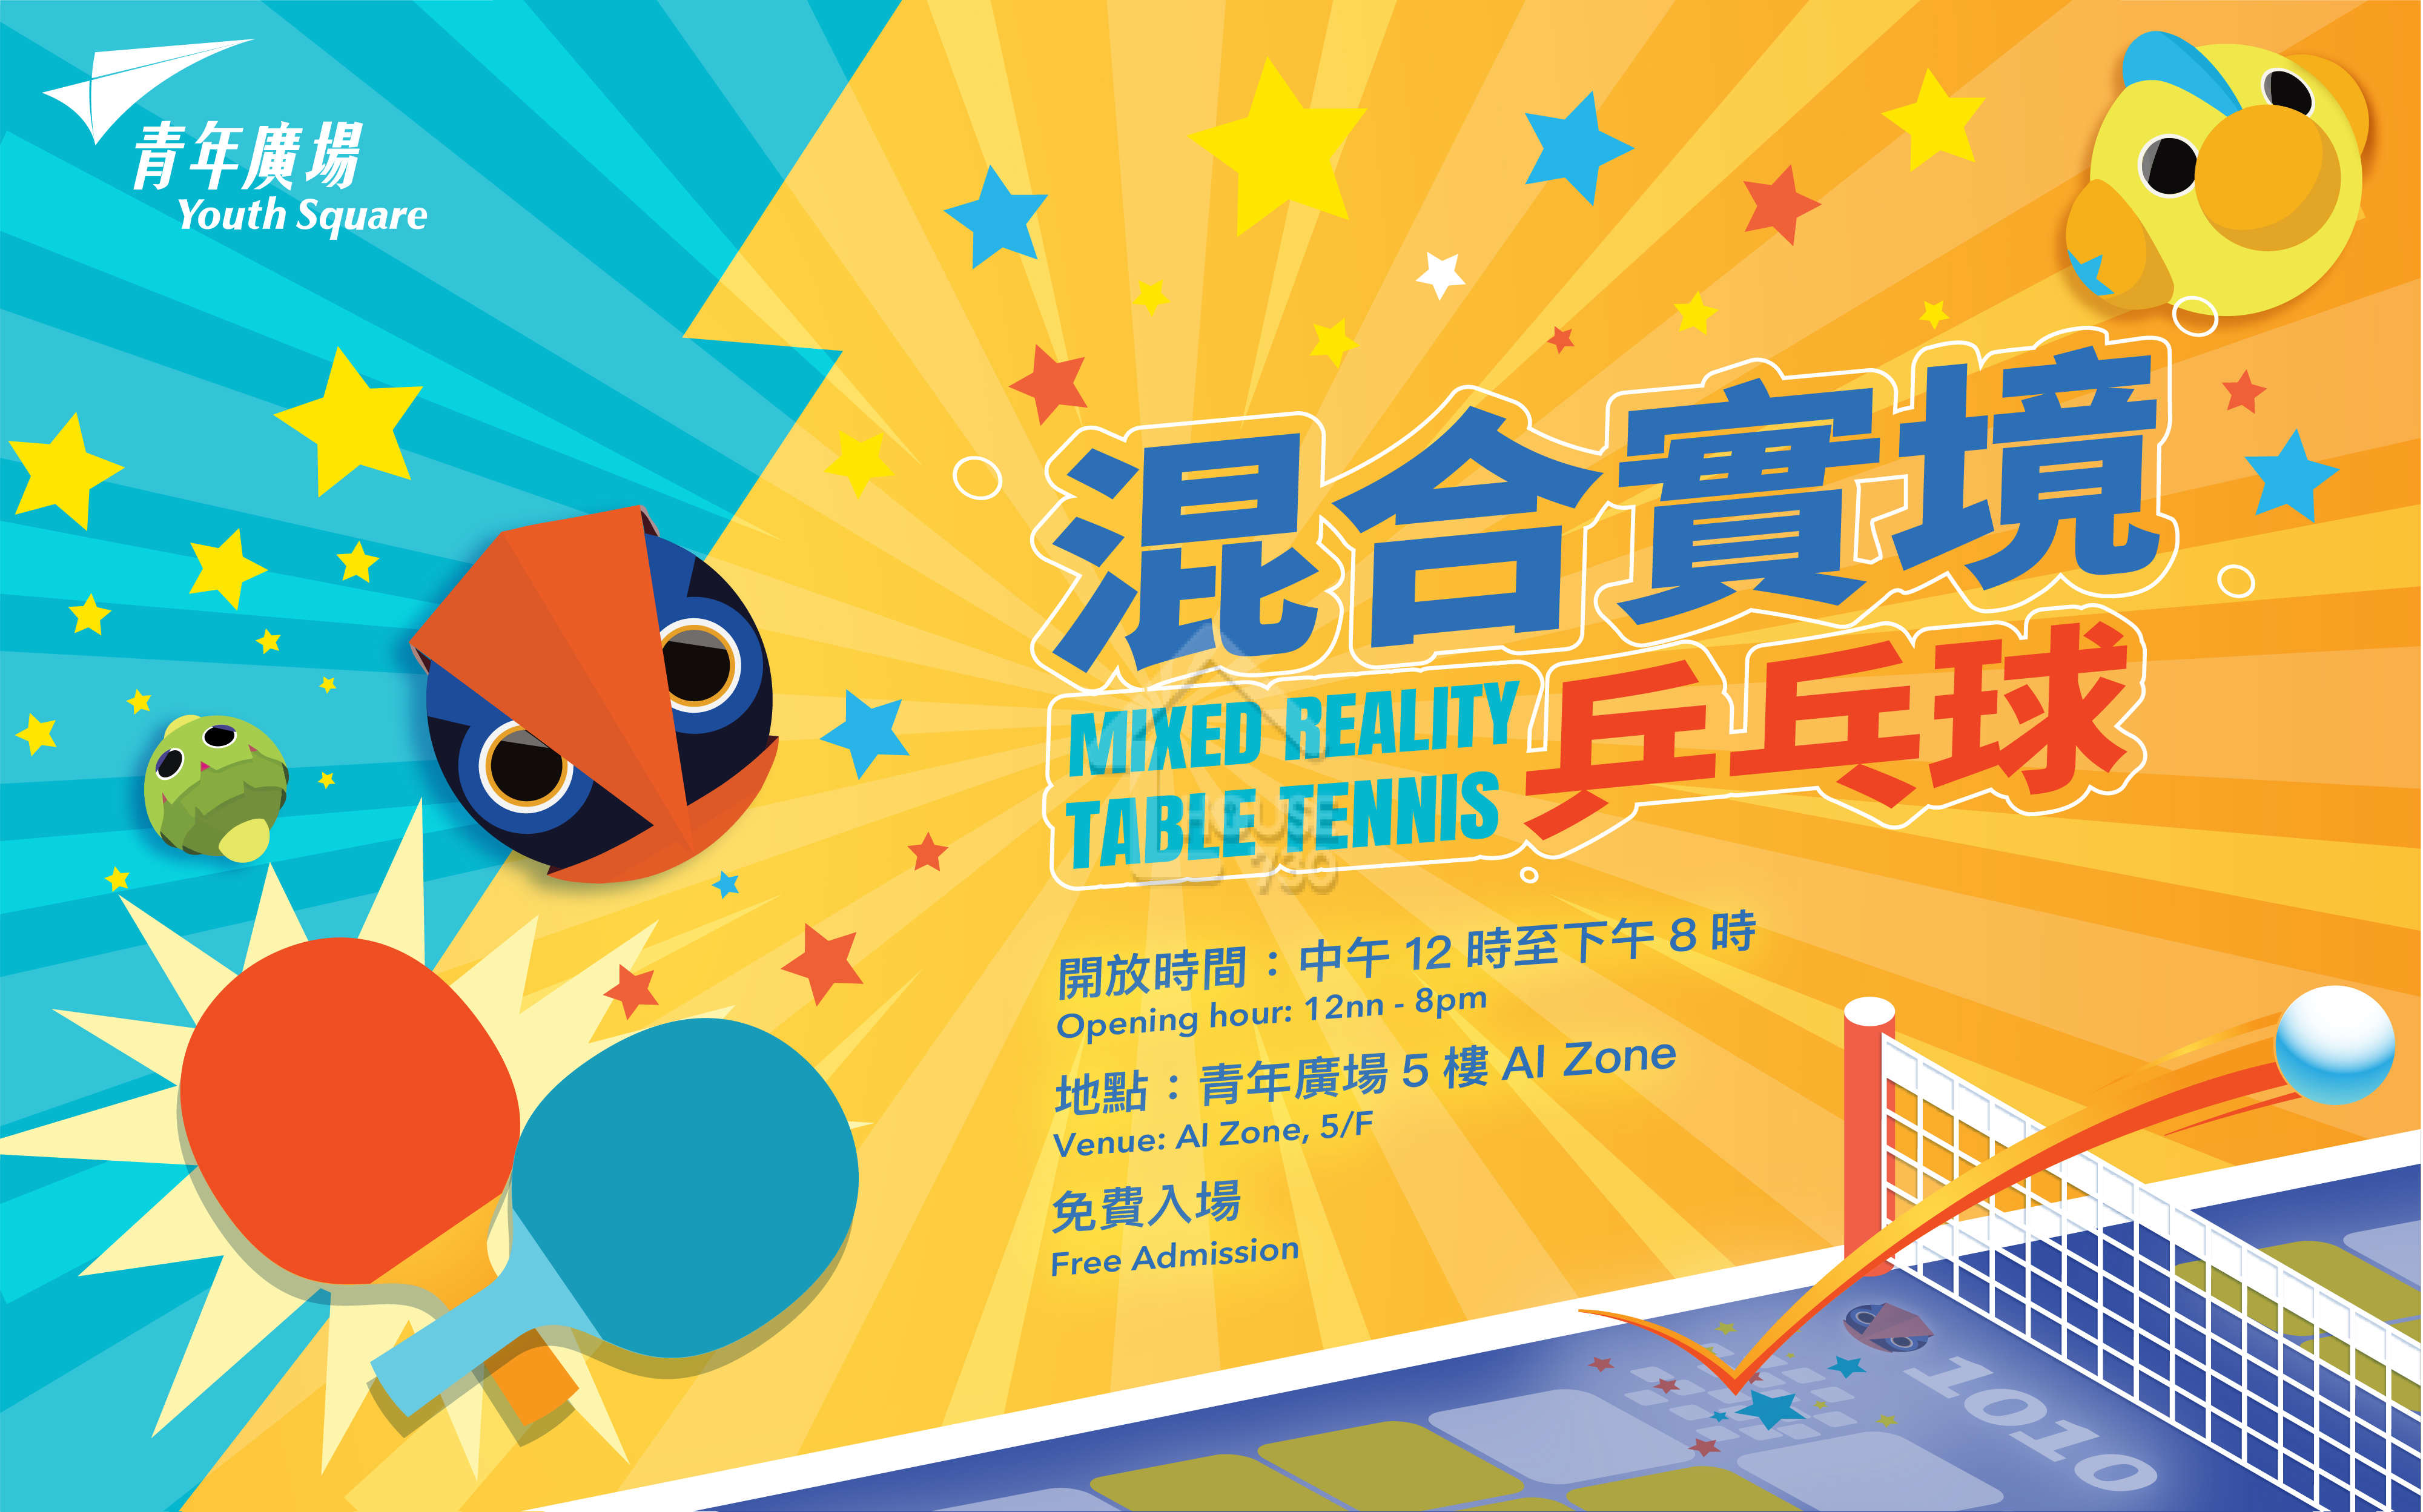 在柴灣青年廣場設有「混合實境乒乓球」，可以利用AI技術練球呢。